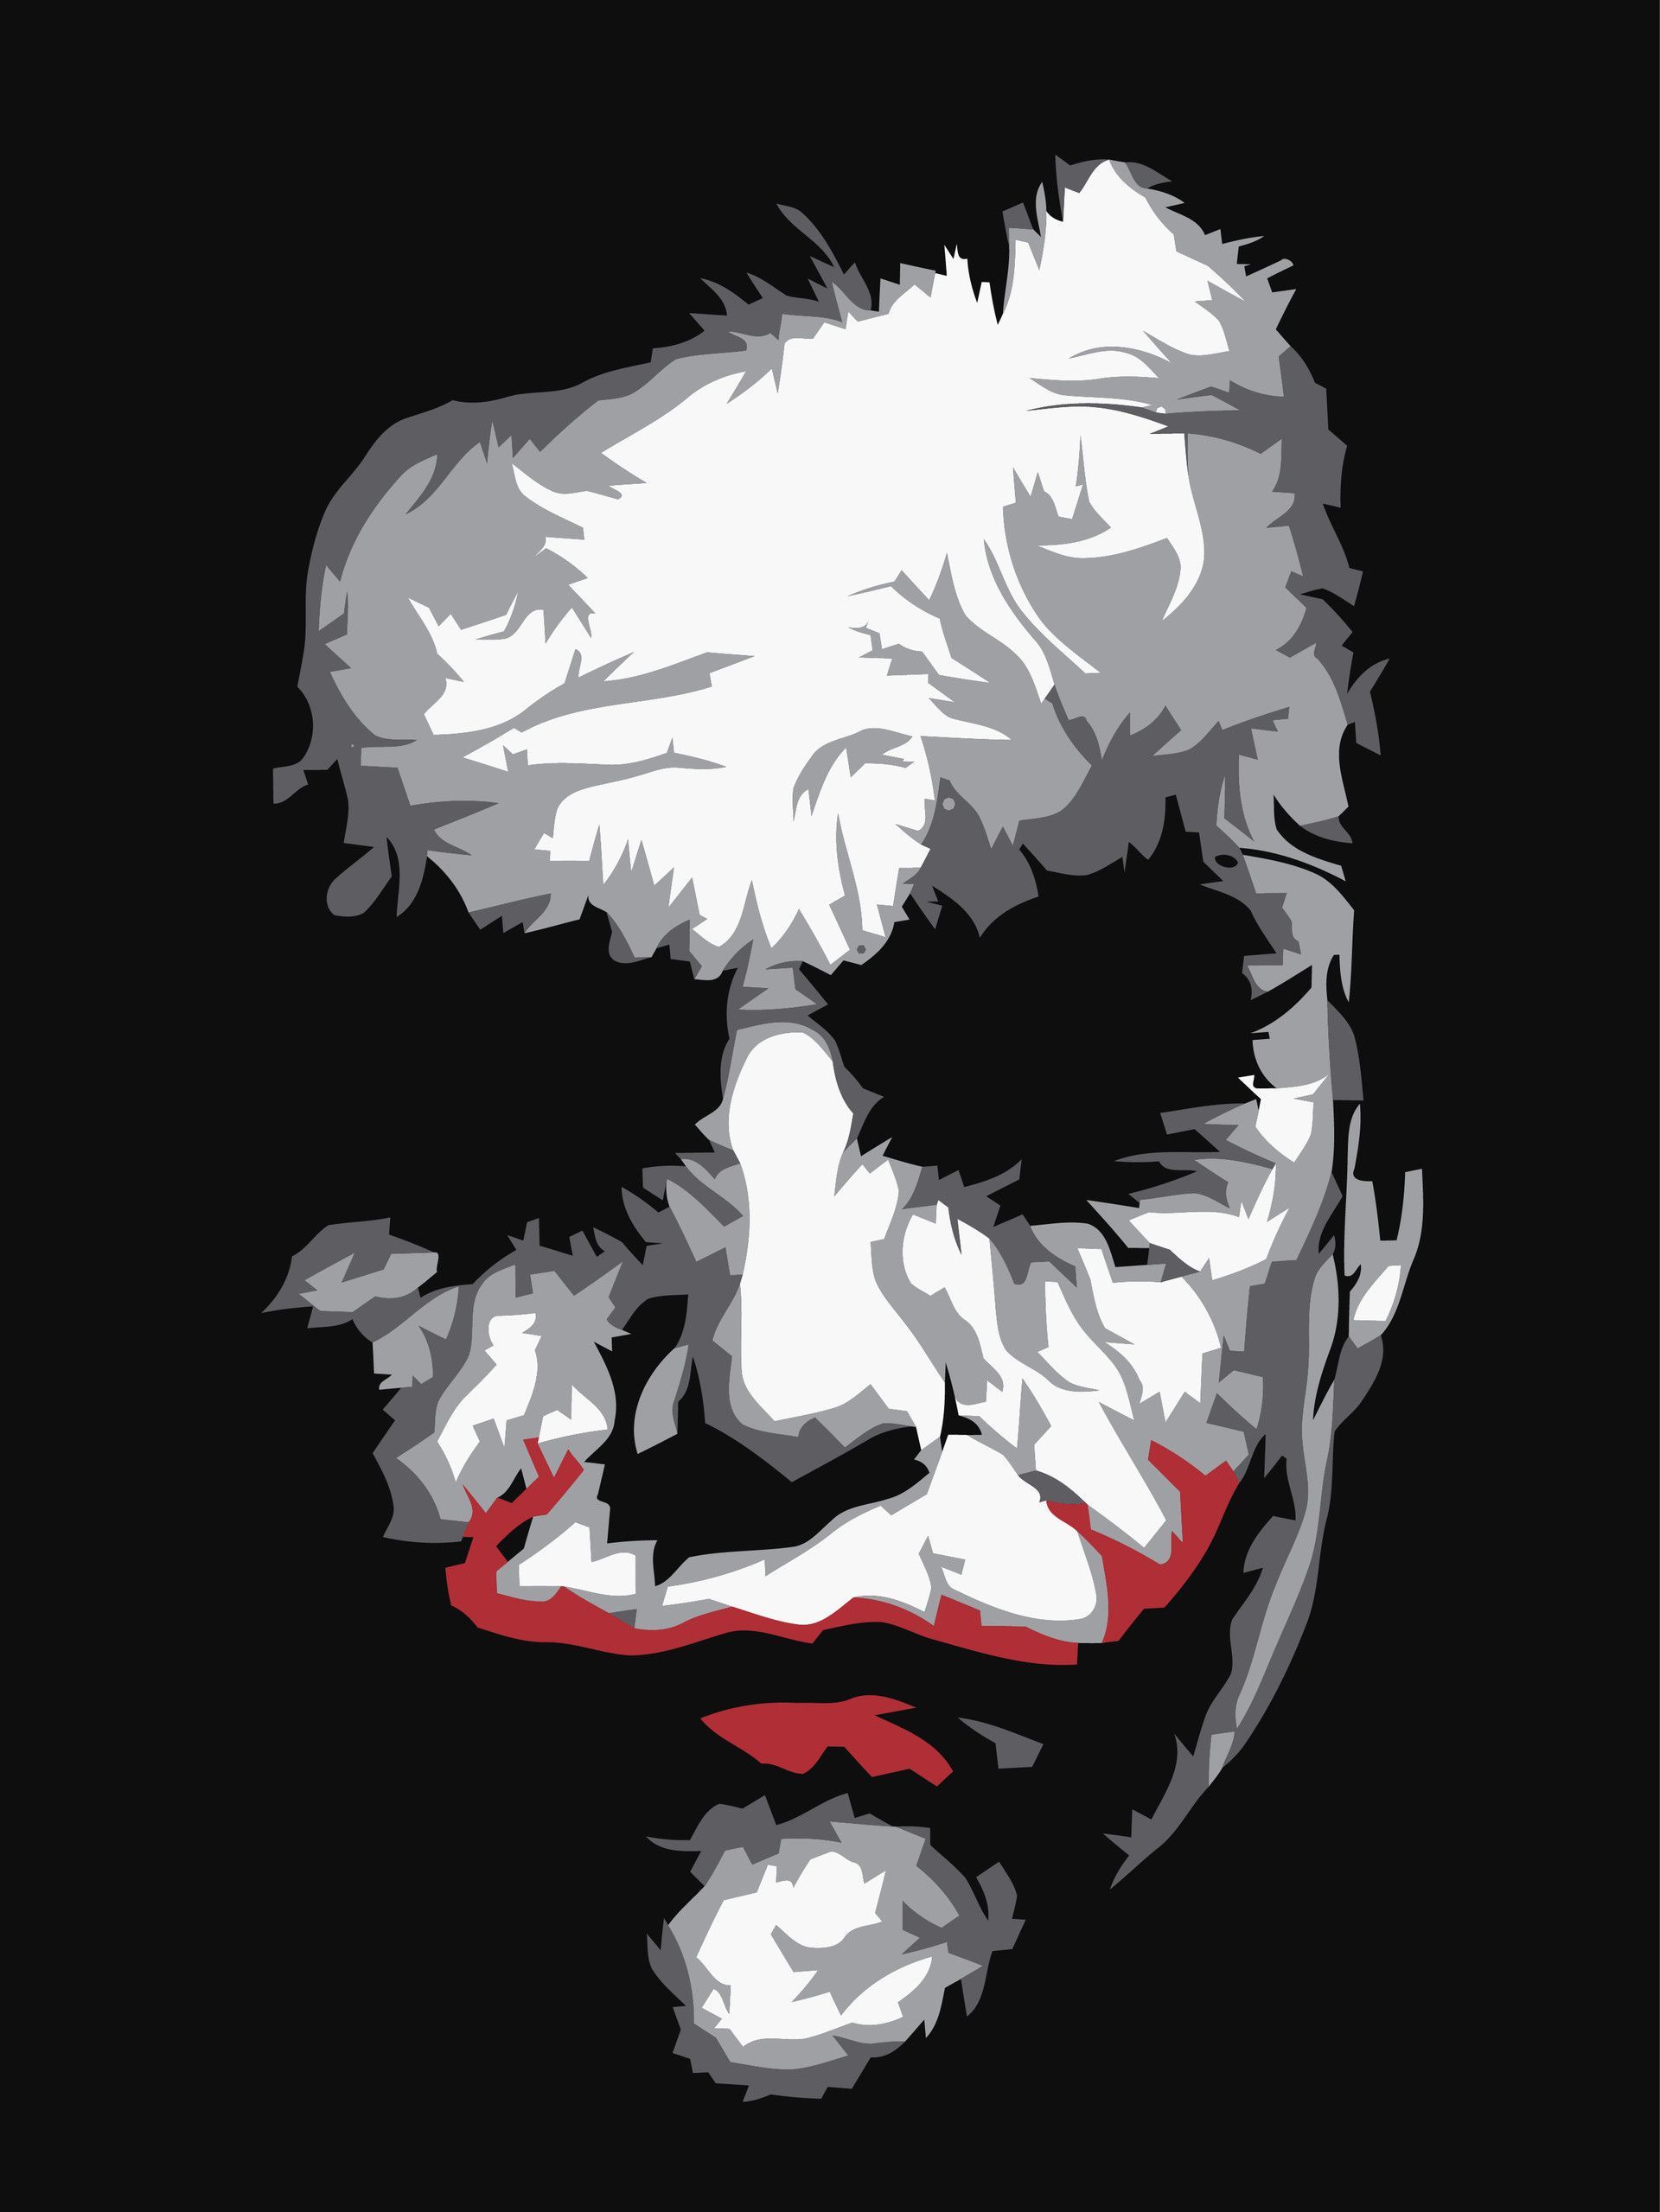 Heath Ledger Tribute, Mohammad Nidal Khan. Joker drawings, Joker painting, Joker artwork